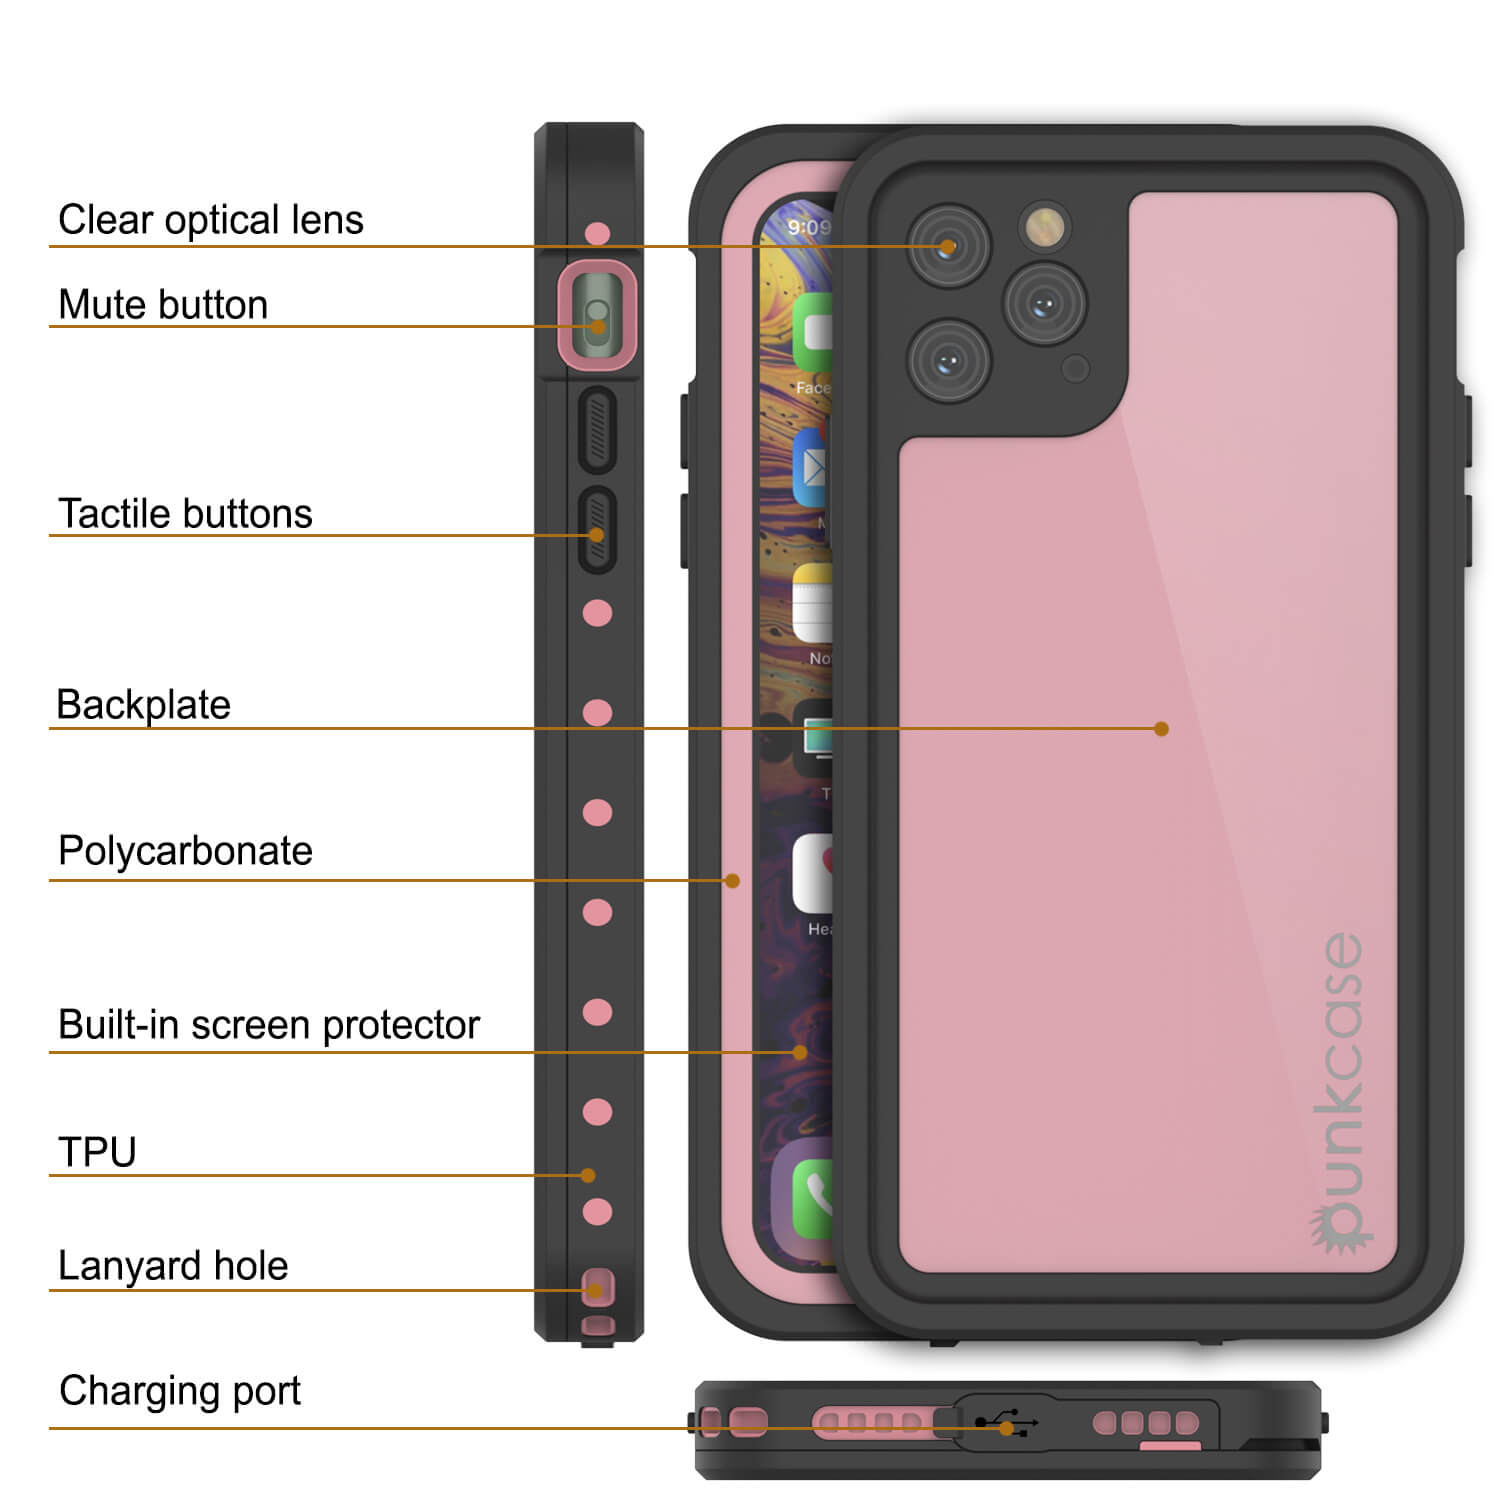 iPhone 11 Pro Max Waterproof IP68 Case, Punkcase [Pink] [StudStar Series] [Slim Fit] [Dirtproof]